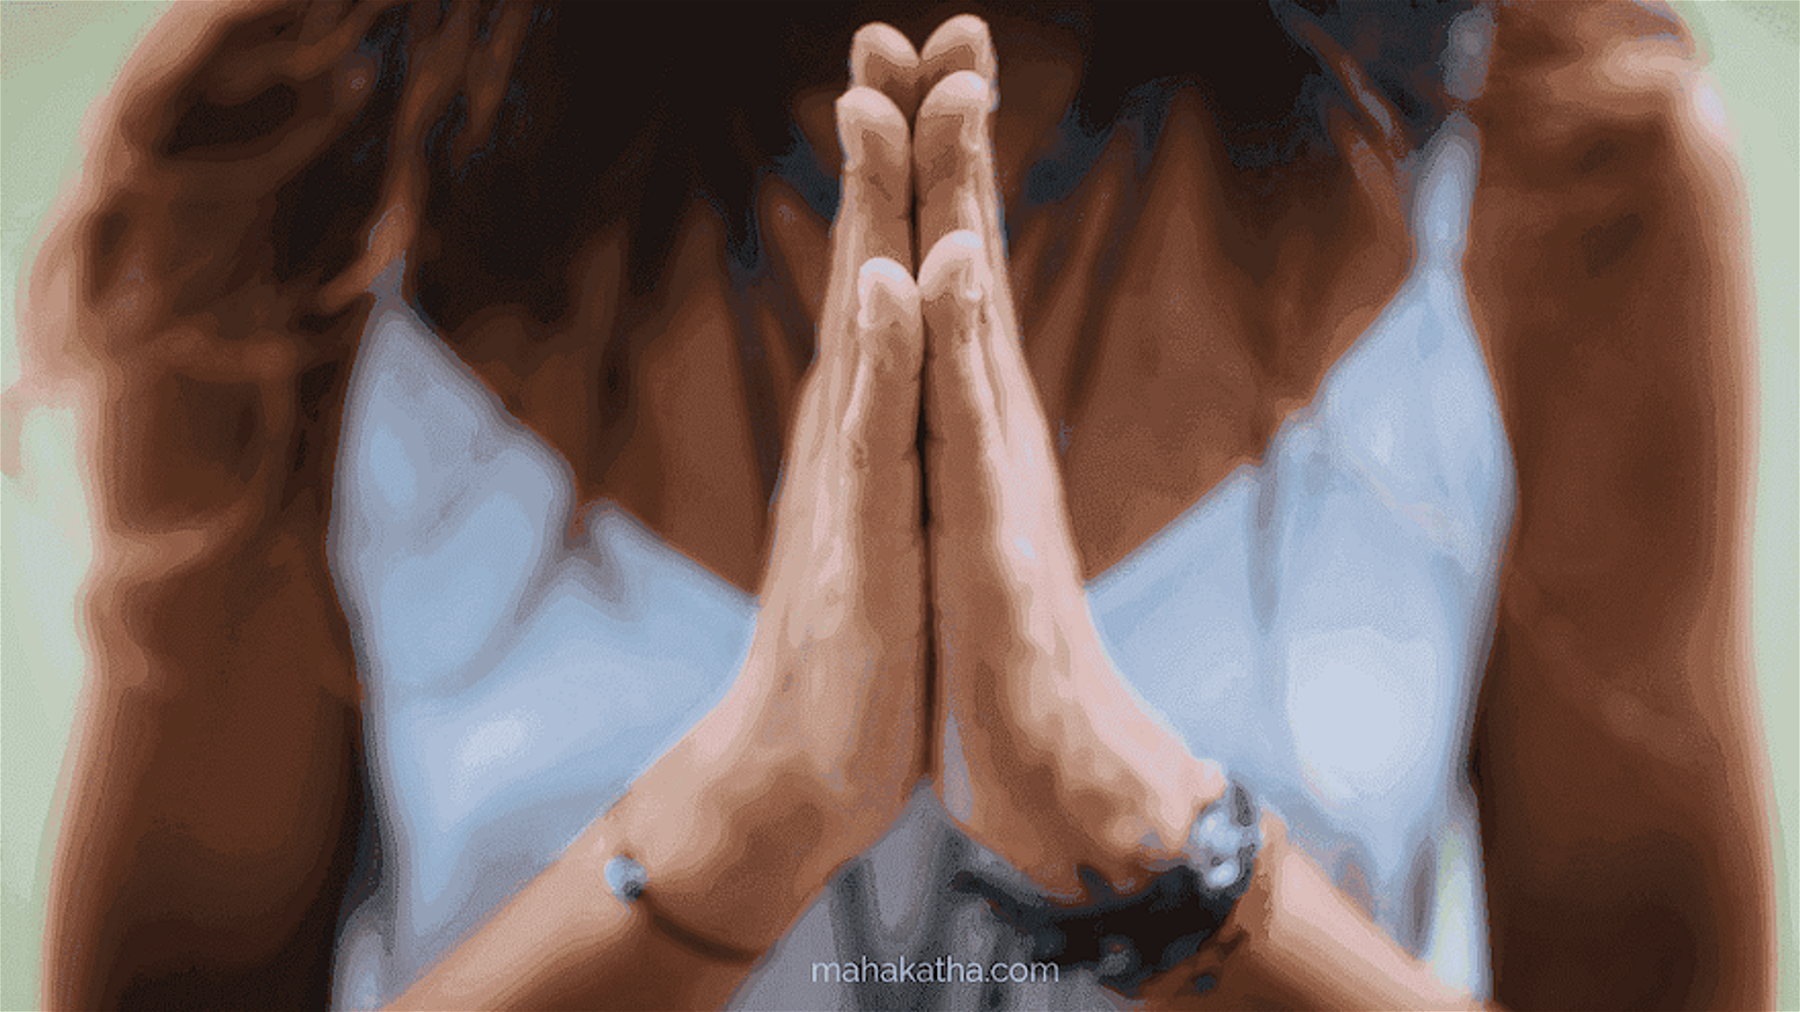 Opening prayer for yoga